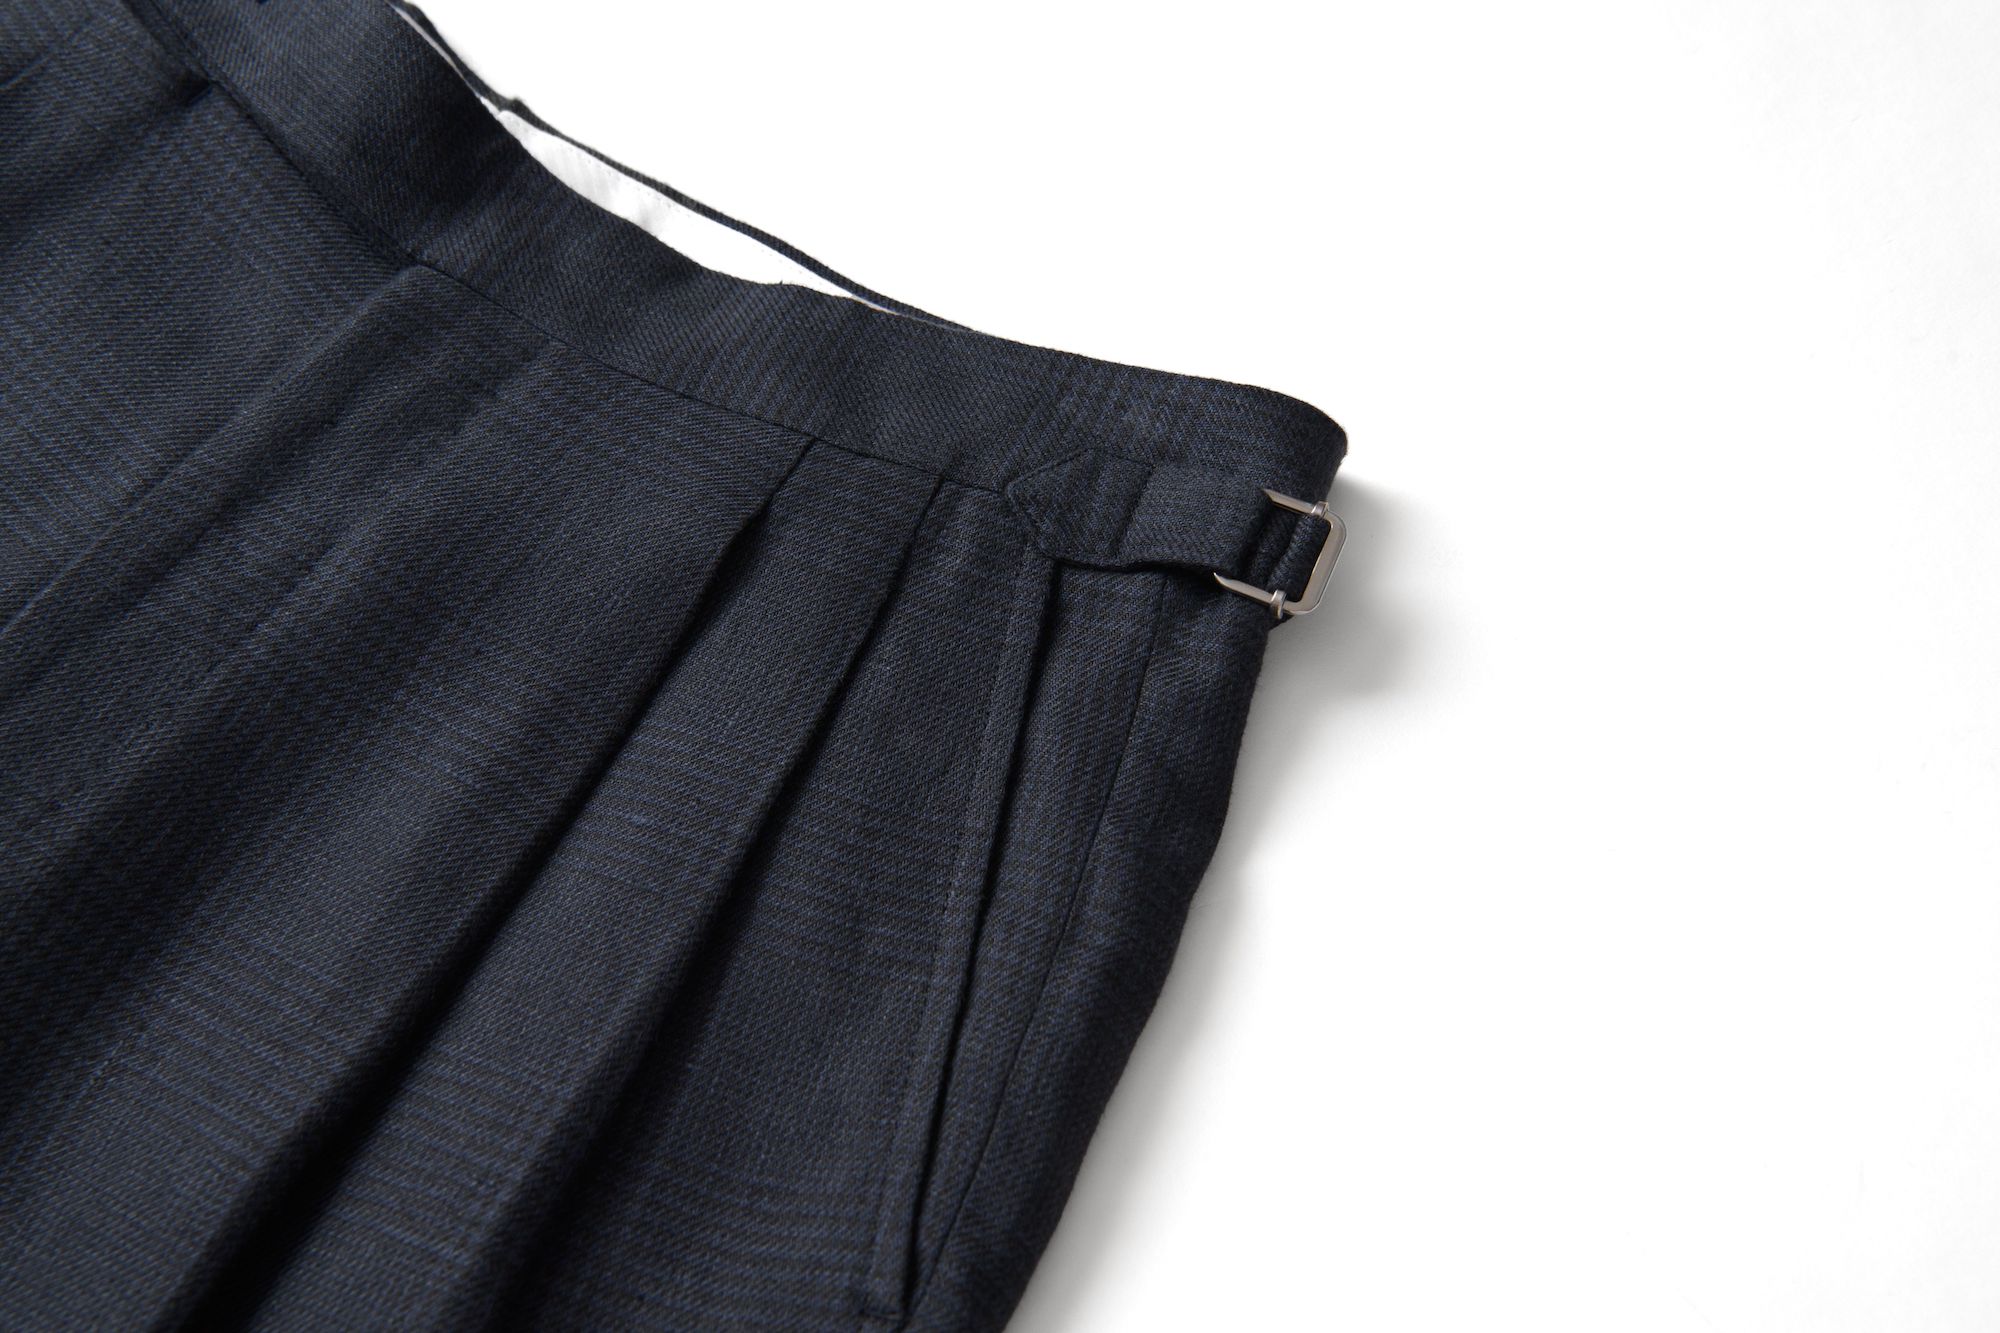 double pleat trouser detail